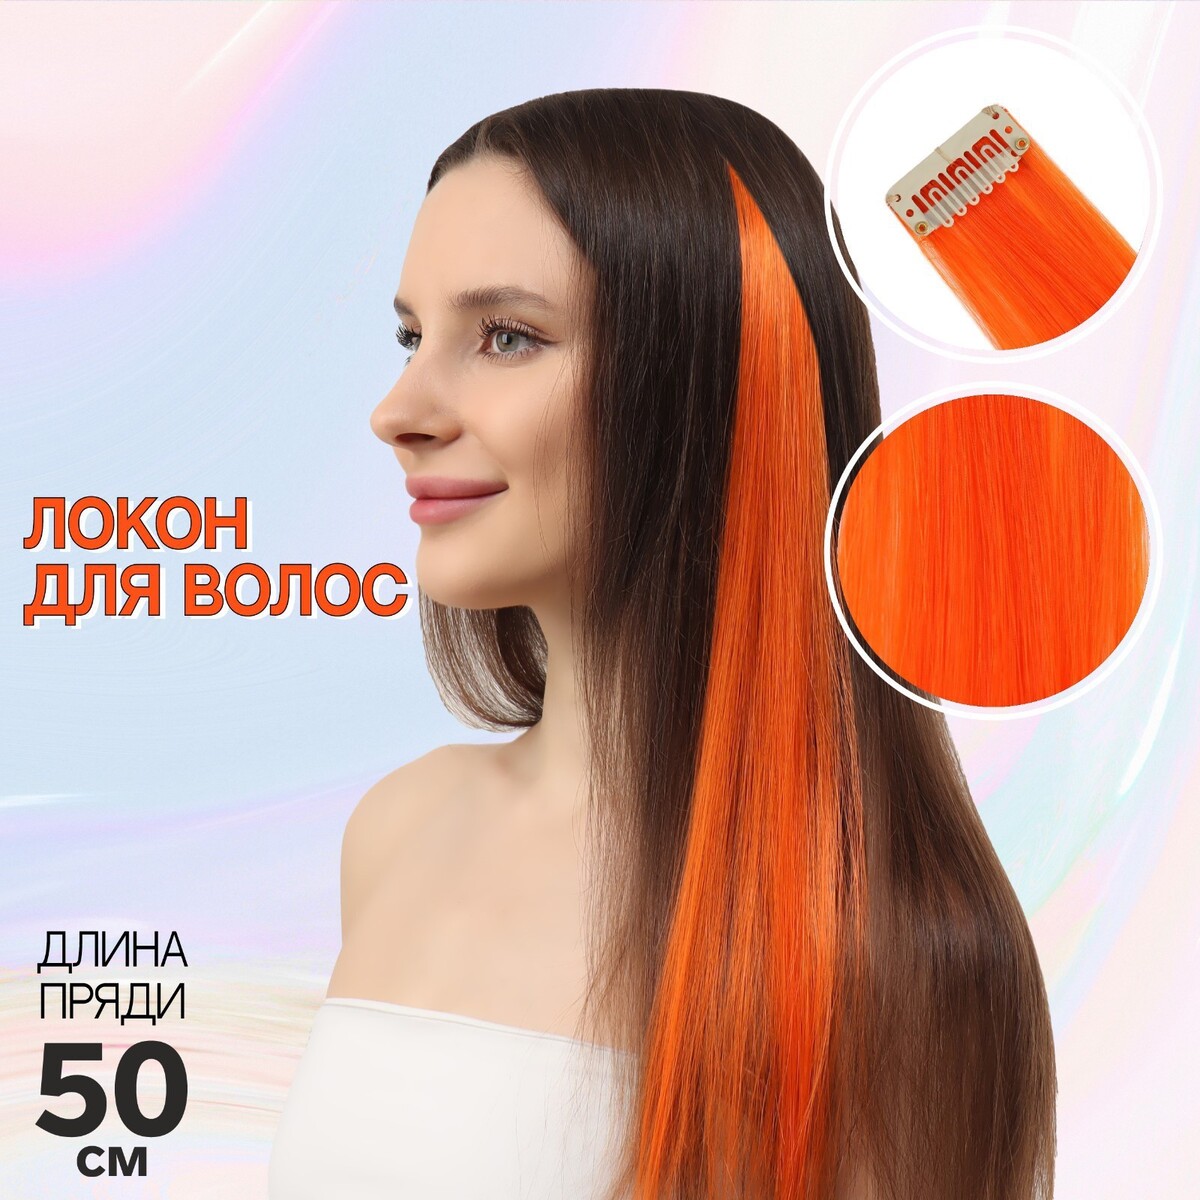 Локон накладной, прямой волос, на заколке, 50 см, 5 гр, цвет оранжевый локон накладной прямой волос на заколке 50 см 5 гр бирюзовый